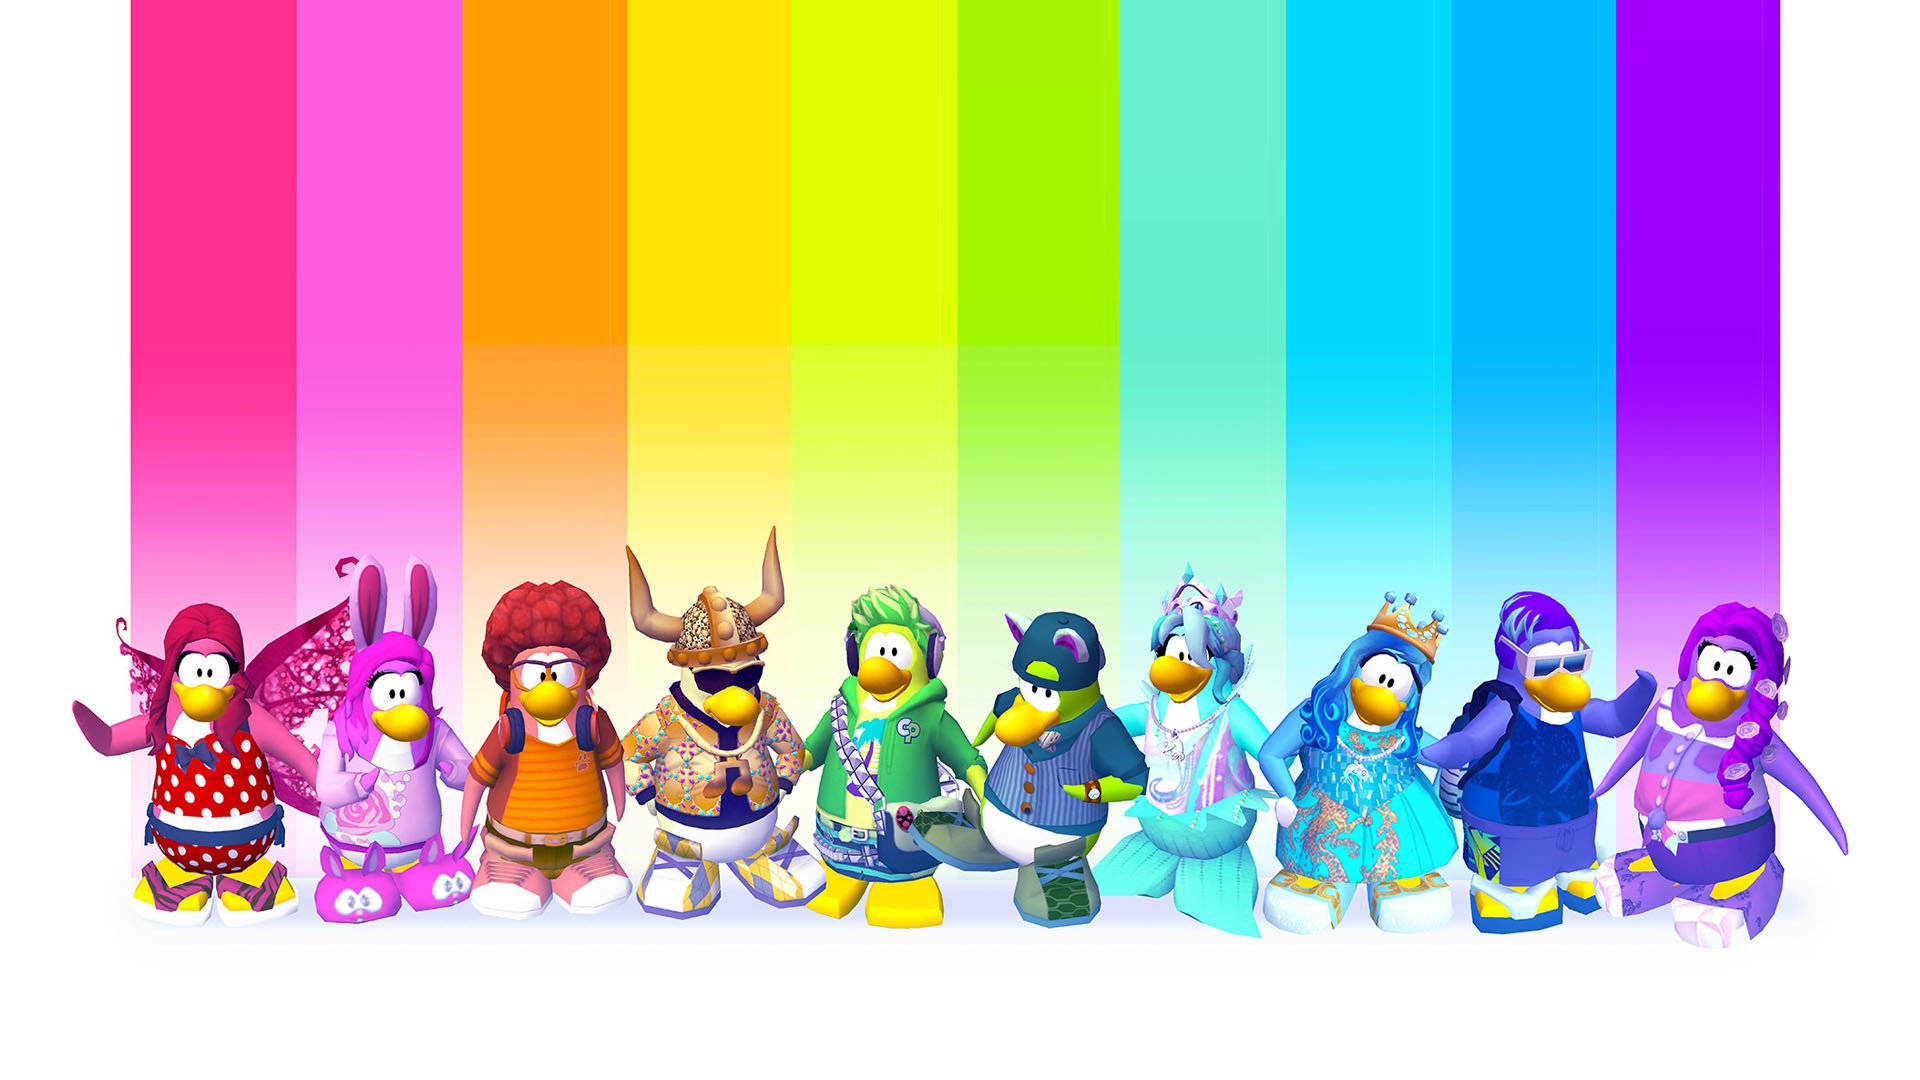 Personagensdo Club Penguin Com Vários Trajes. Papel de Parede